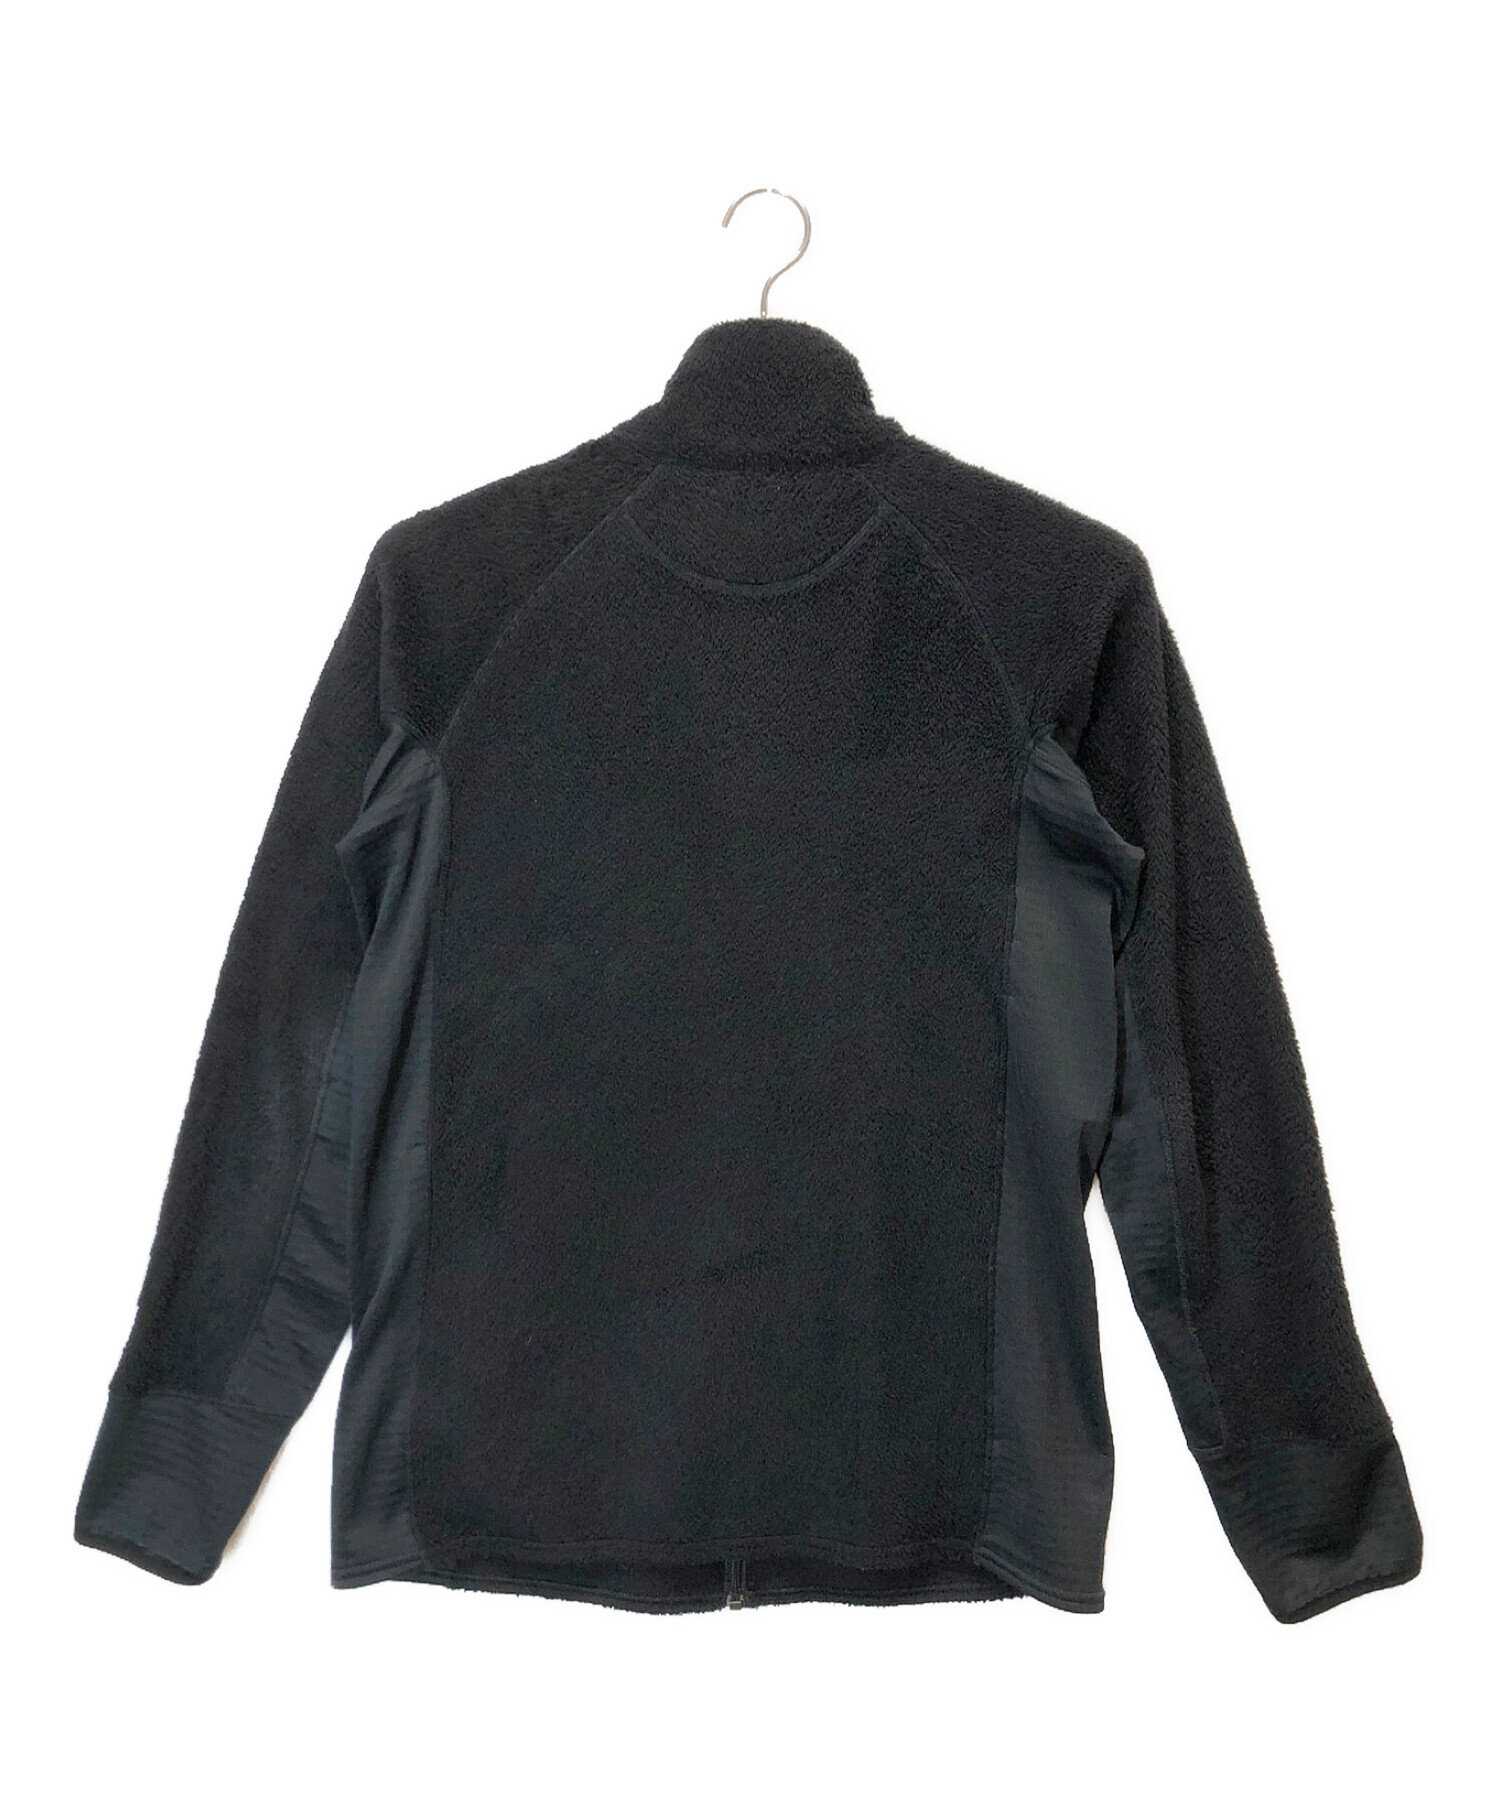 Patagonia (パタゴニア) R2フリースジャケット ブラック サイズ:M